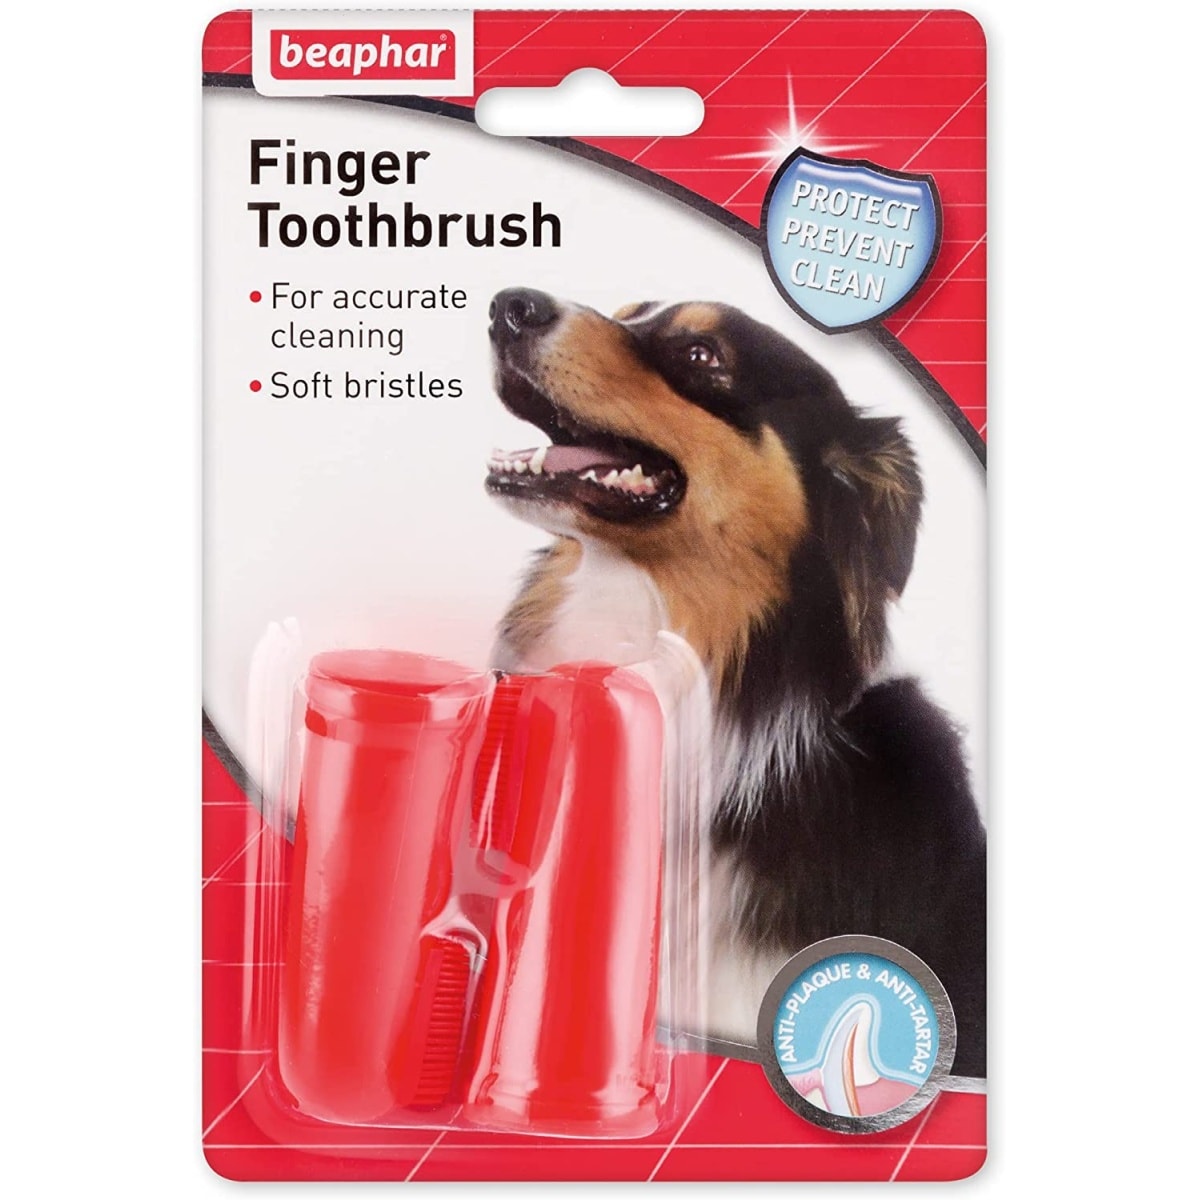 Beaphar Finger Toothbrush Main Image